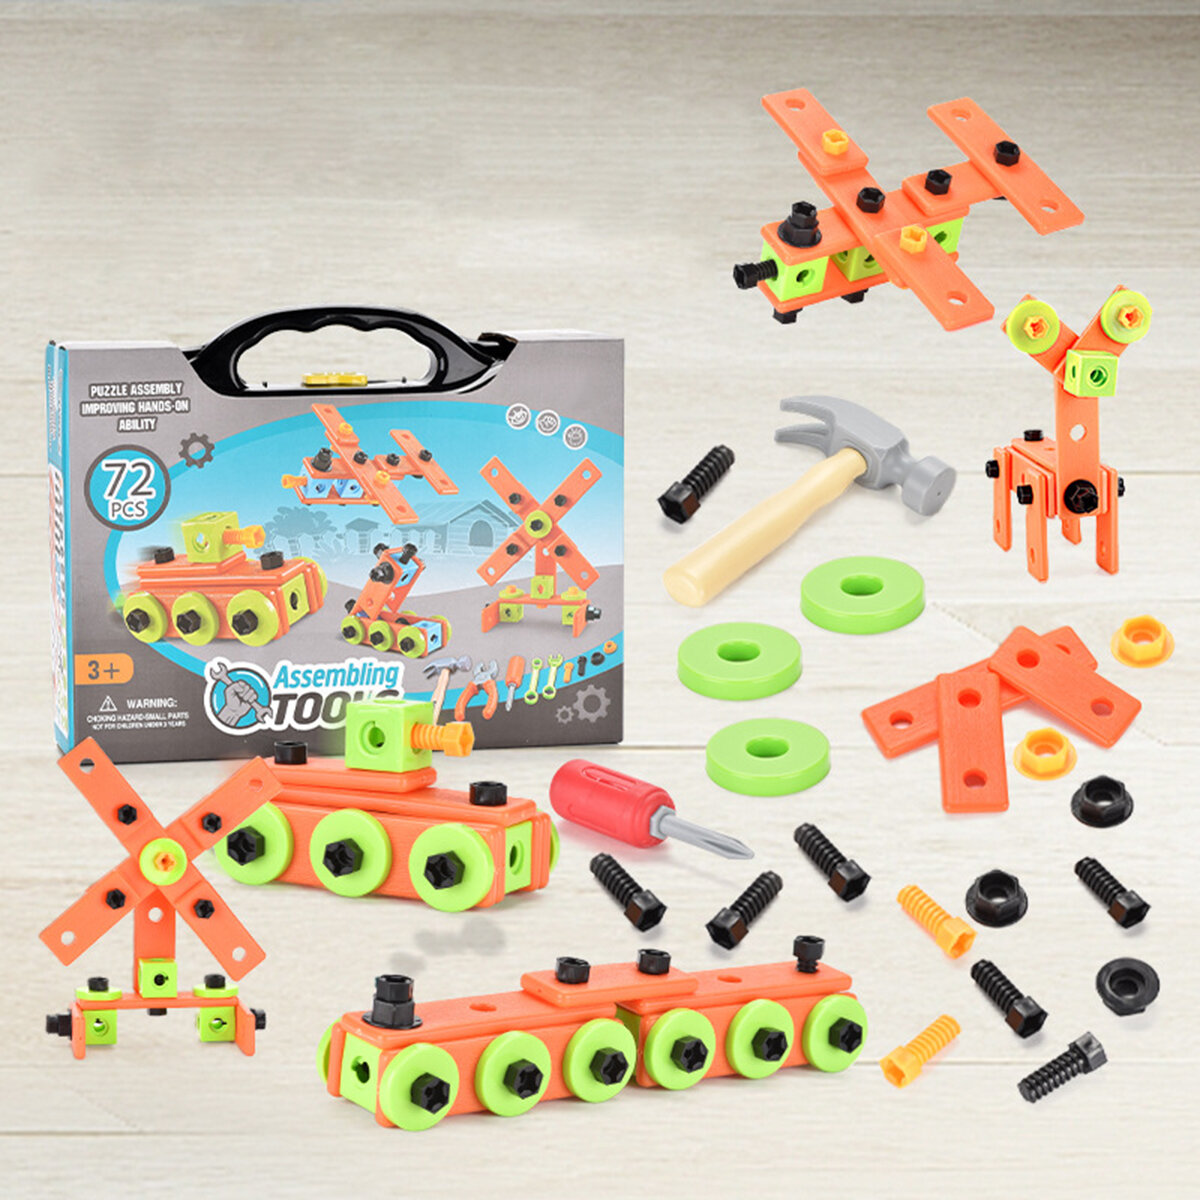 13 / 72Pcs 3D Puzzel DIY Montage Schroeven Blokken Reparatie Tool Kit Educatief Speelgoed voor Kinde